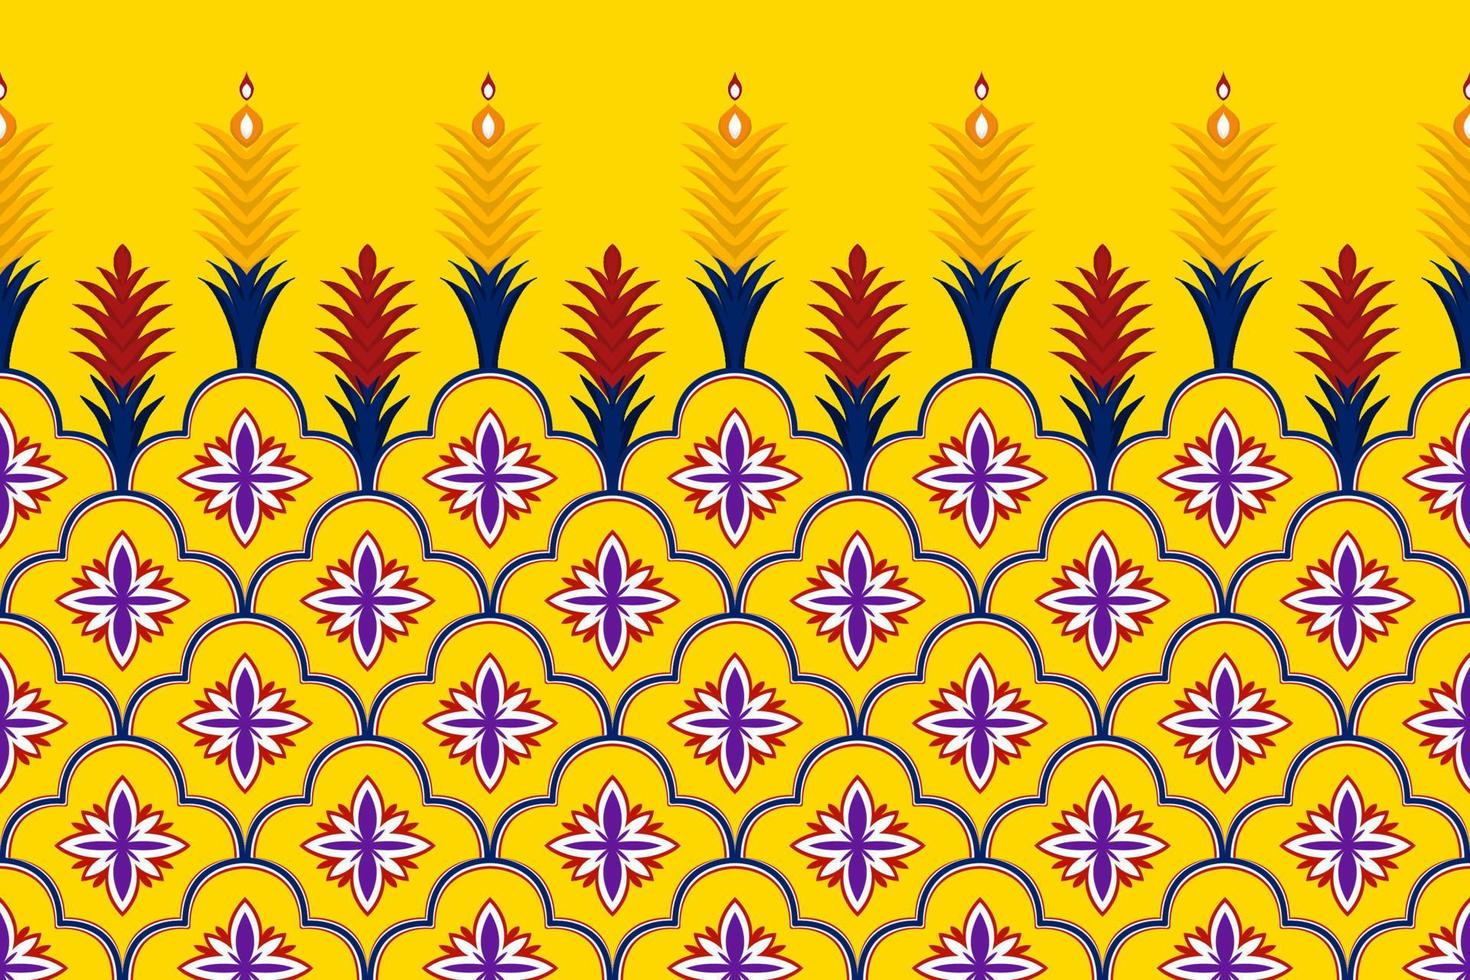 conception de modèle sans couture marocaine ethnique géométrique abstraite. tapis en tissu aztèque ornement mandala chevron décoration textile papier peint. fond d'illustrations vectorielles de broderie traditionnelle tribale vecteur